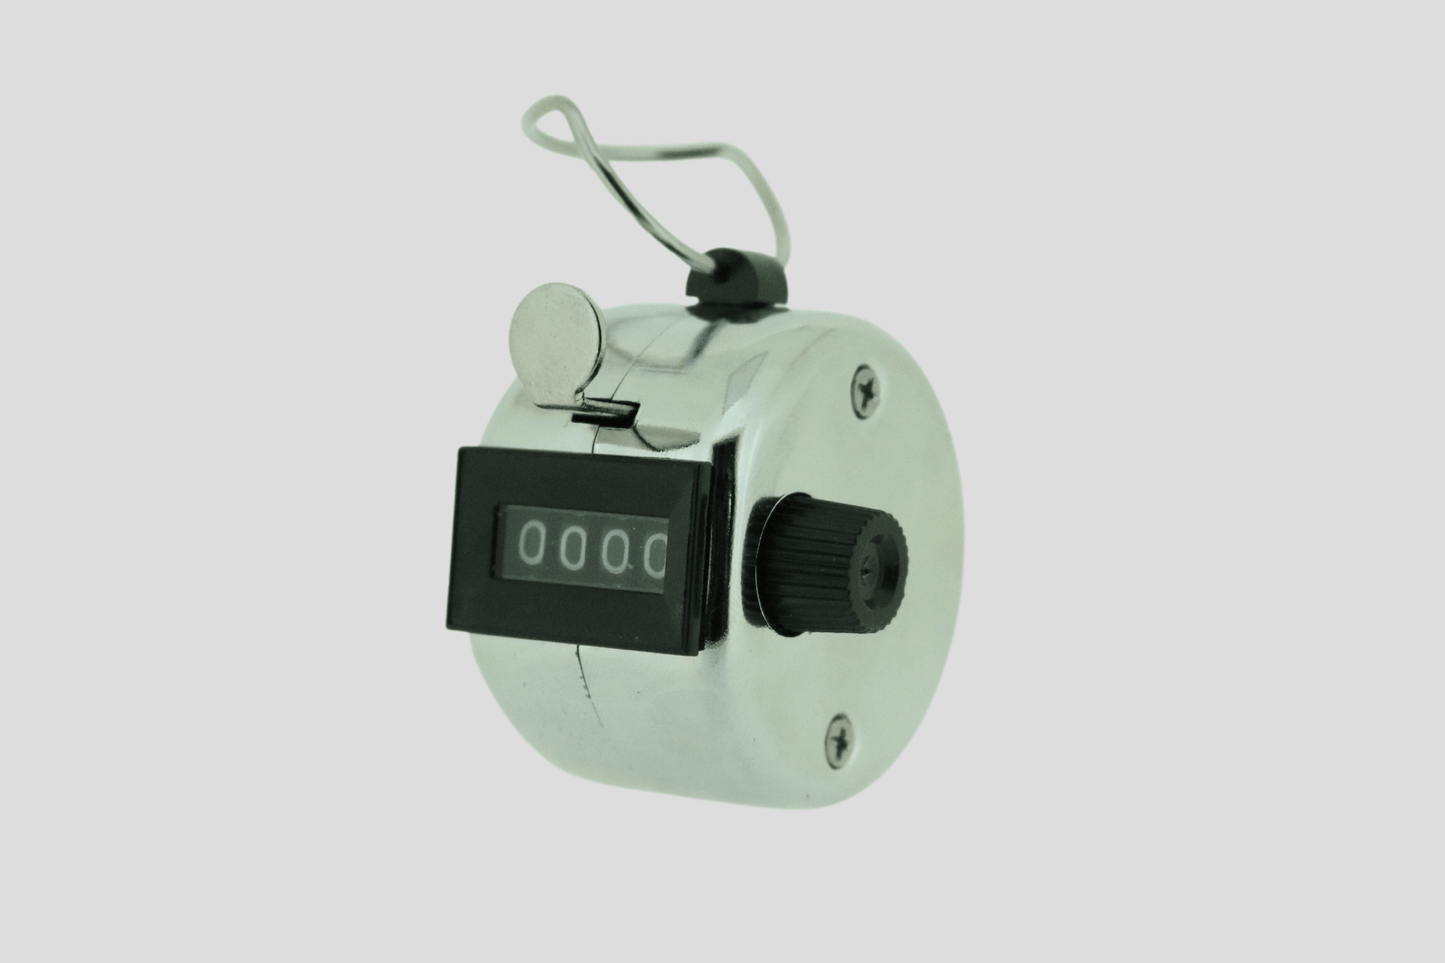 En liten elektronisk Entréräknare- analog på vit bakgrund.